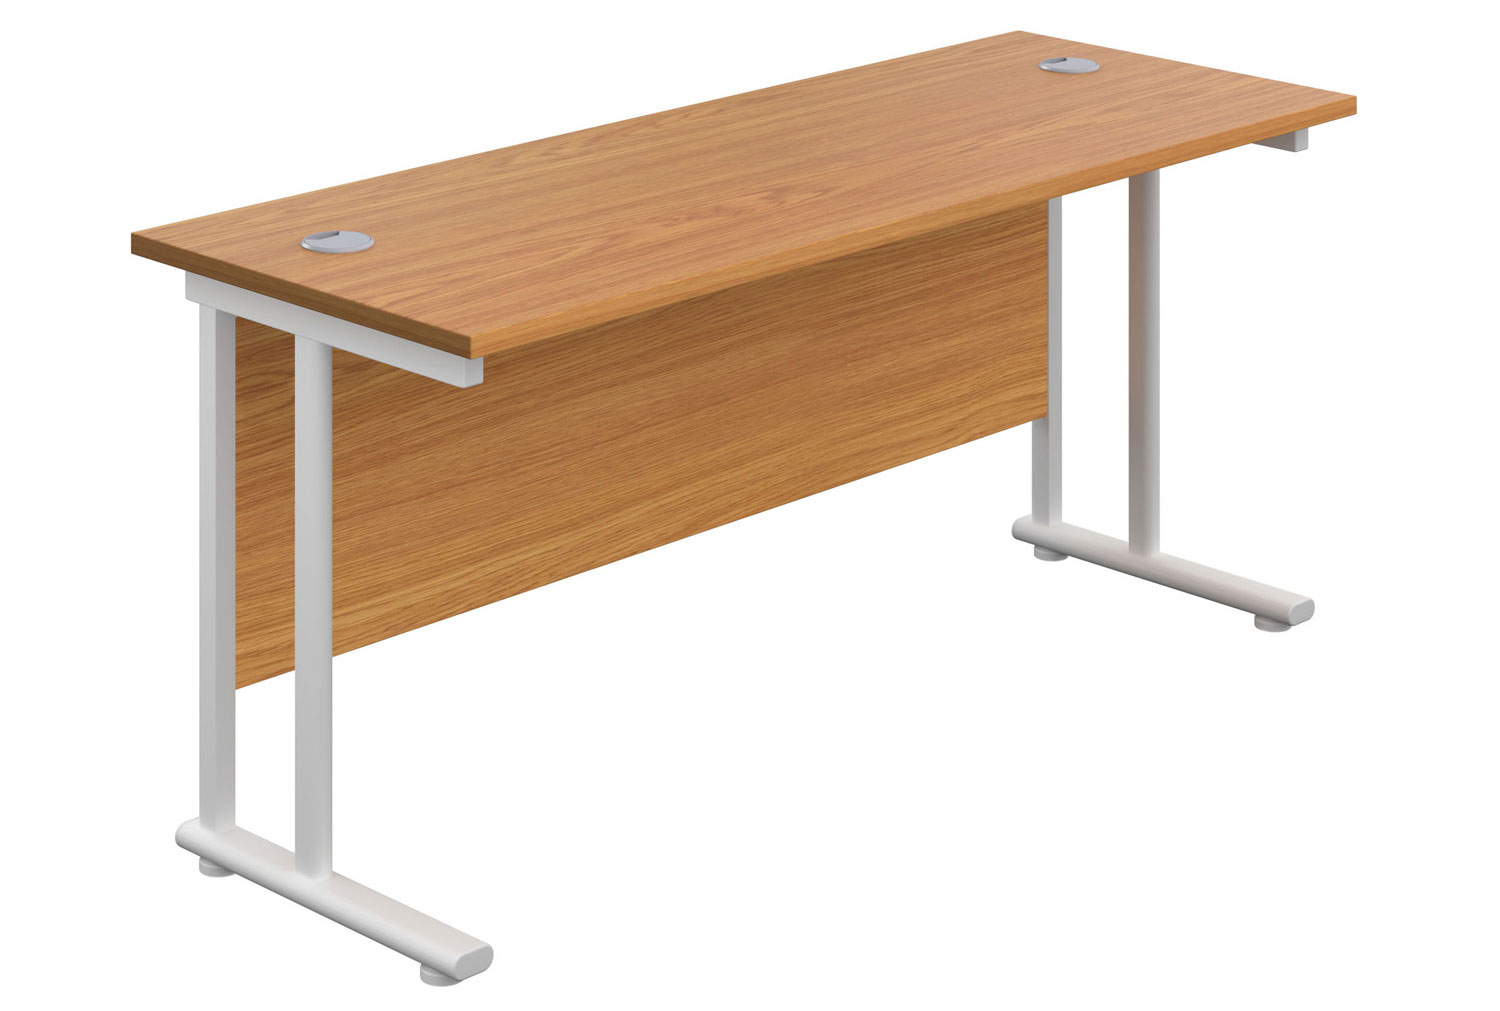 Impulse Narrow Rectangular Office Desk, 180wx60dx73h (cm), White Frame, Nova Oak